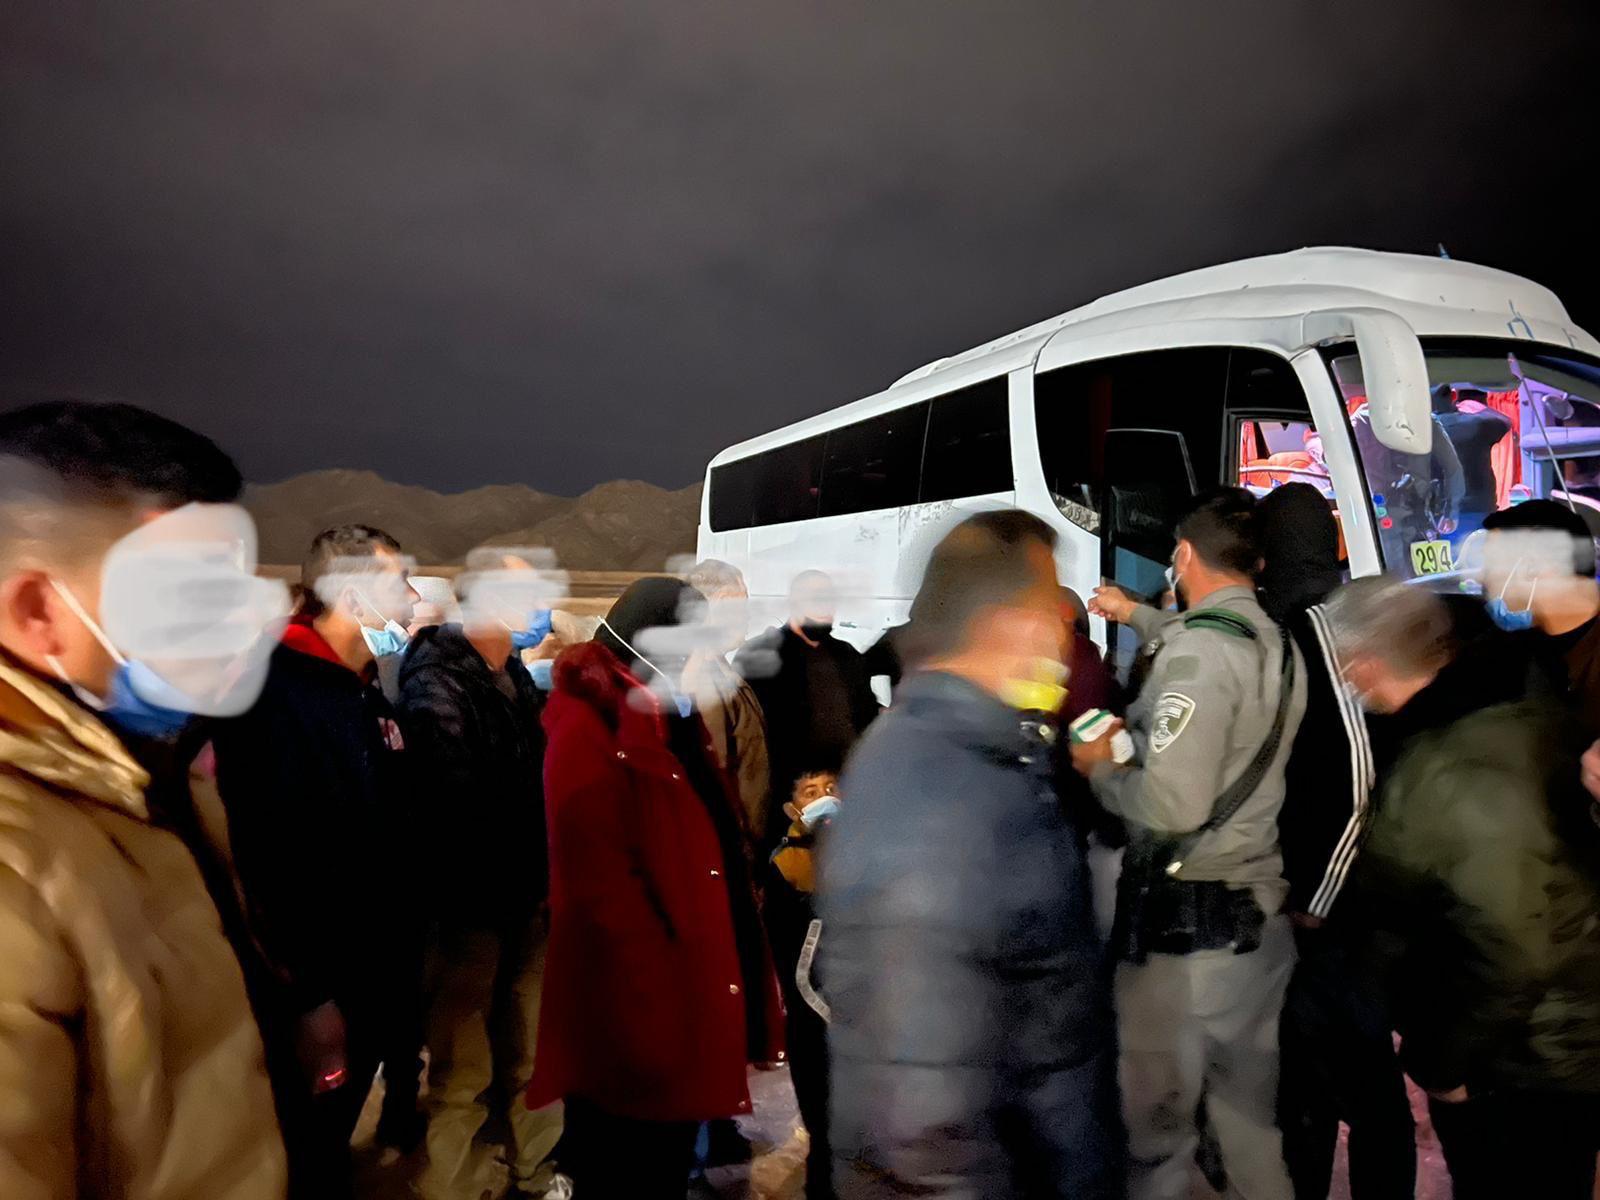 המשטרה עצרה אוטובוס ובו עשרות שוהים בלתי חוקיים באילת